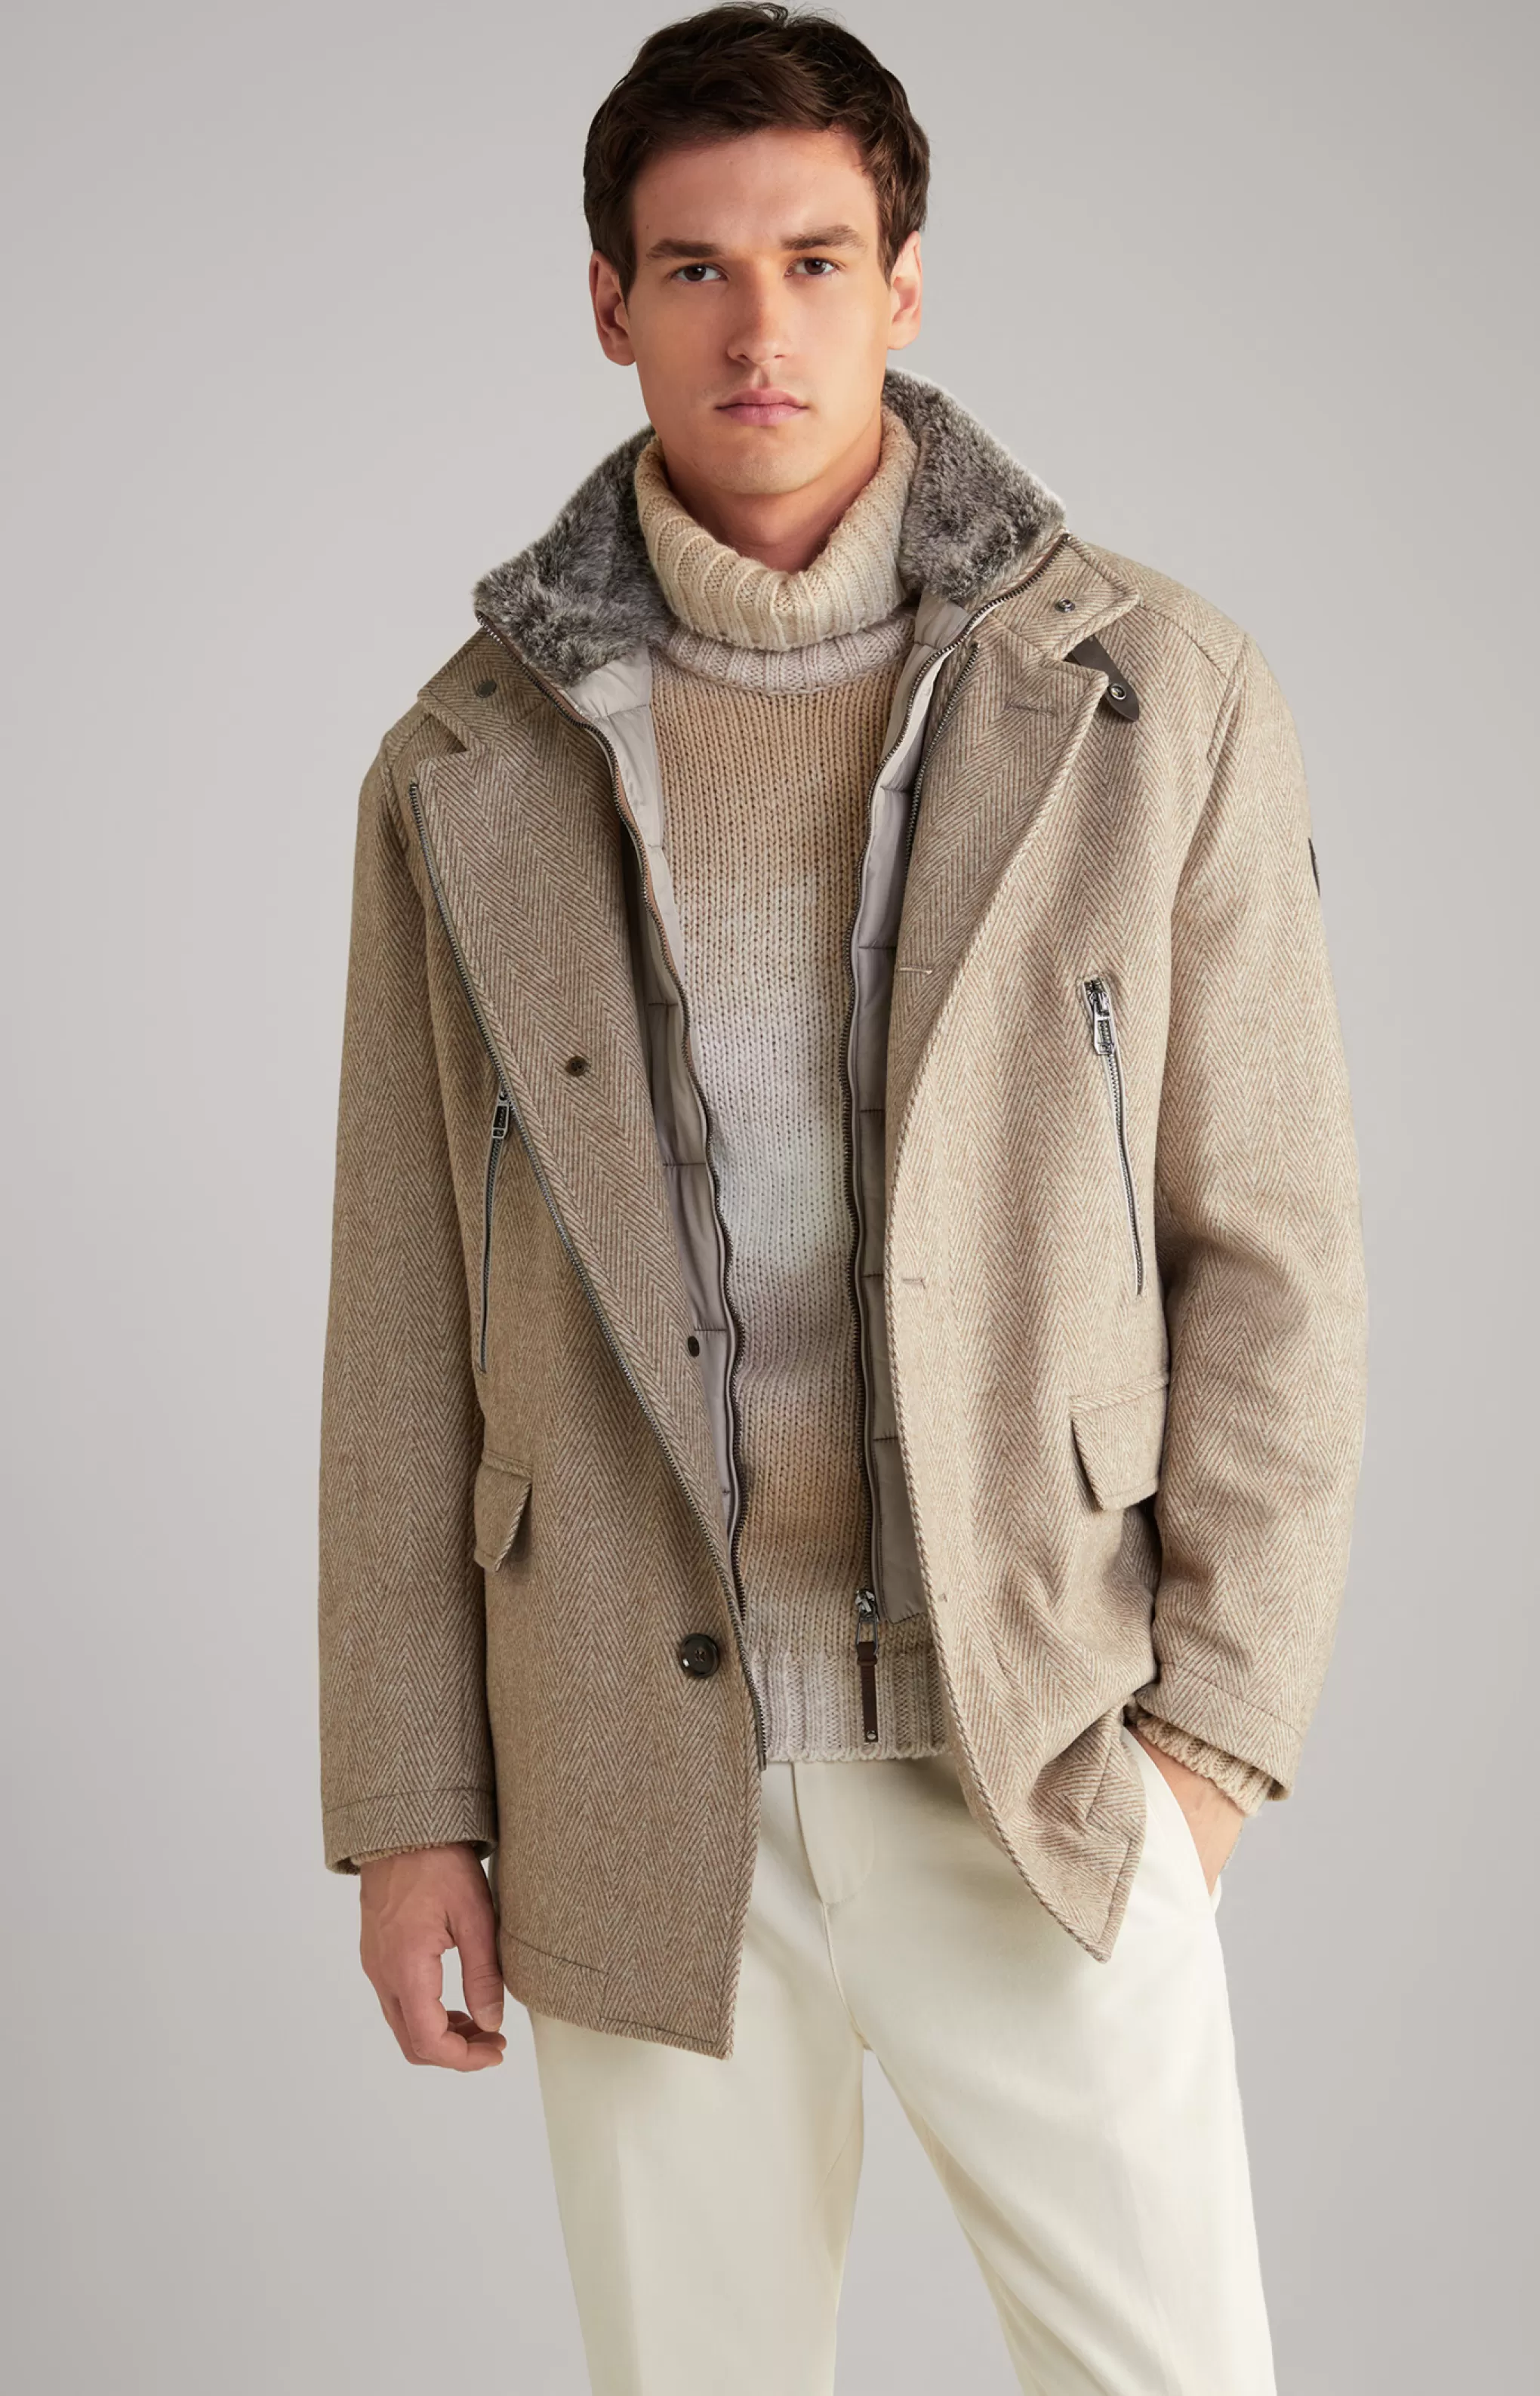 Coats | Jackets | Clothing*JOOP Coats | Jackets | Clothing Gary Coat in a Pattern